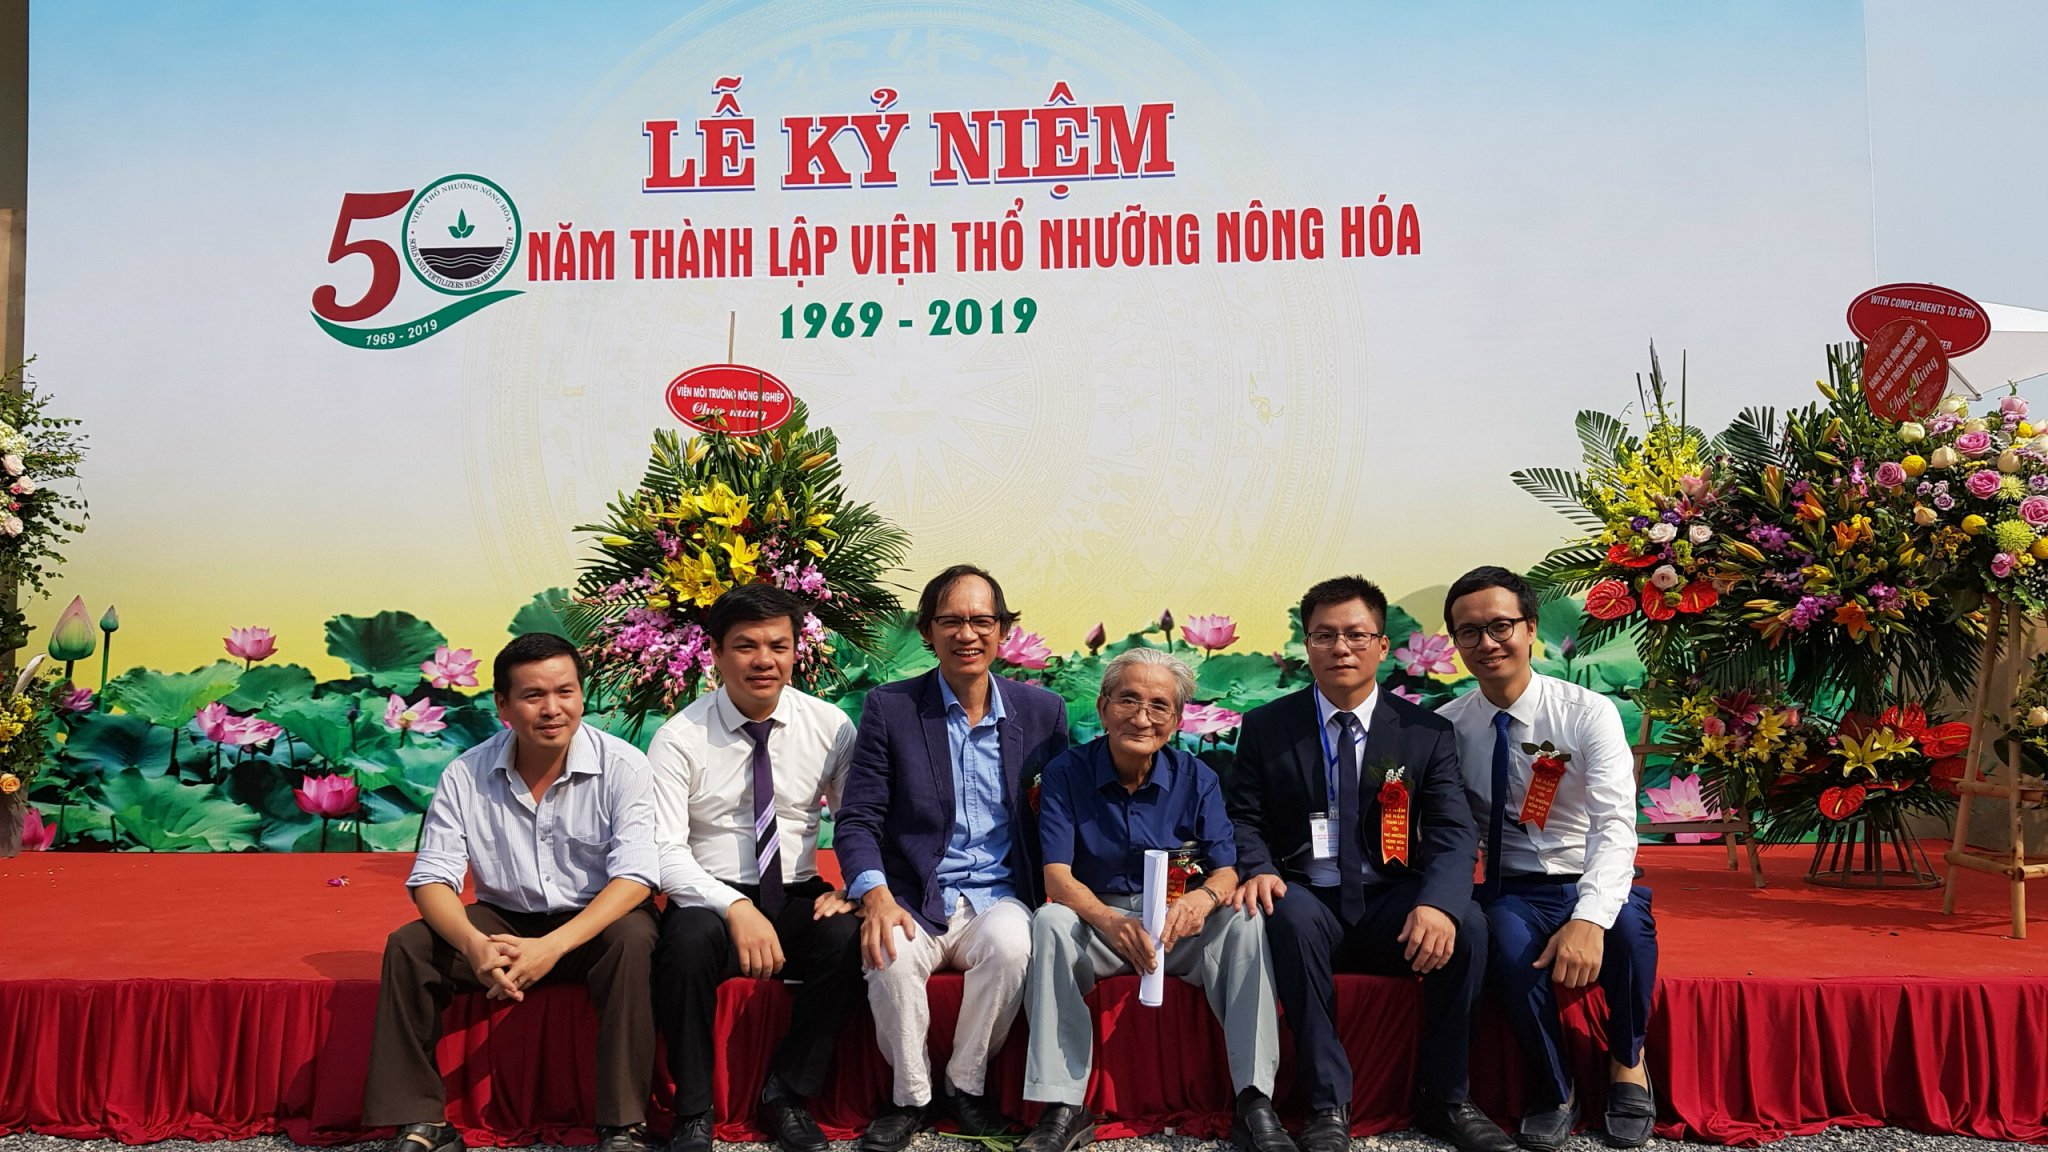 Giáo sư Nguyễn Vy, nguyên là Viện trưởng Viện Thổ nhưỡng Nông hoá, là một nhà khoa học nông nghiệp xuất sắc cho sự nghiệp xây dựng và bảo vệ Tổ quốc. Ảnh: TL.